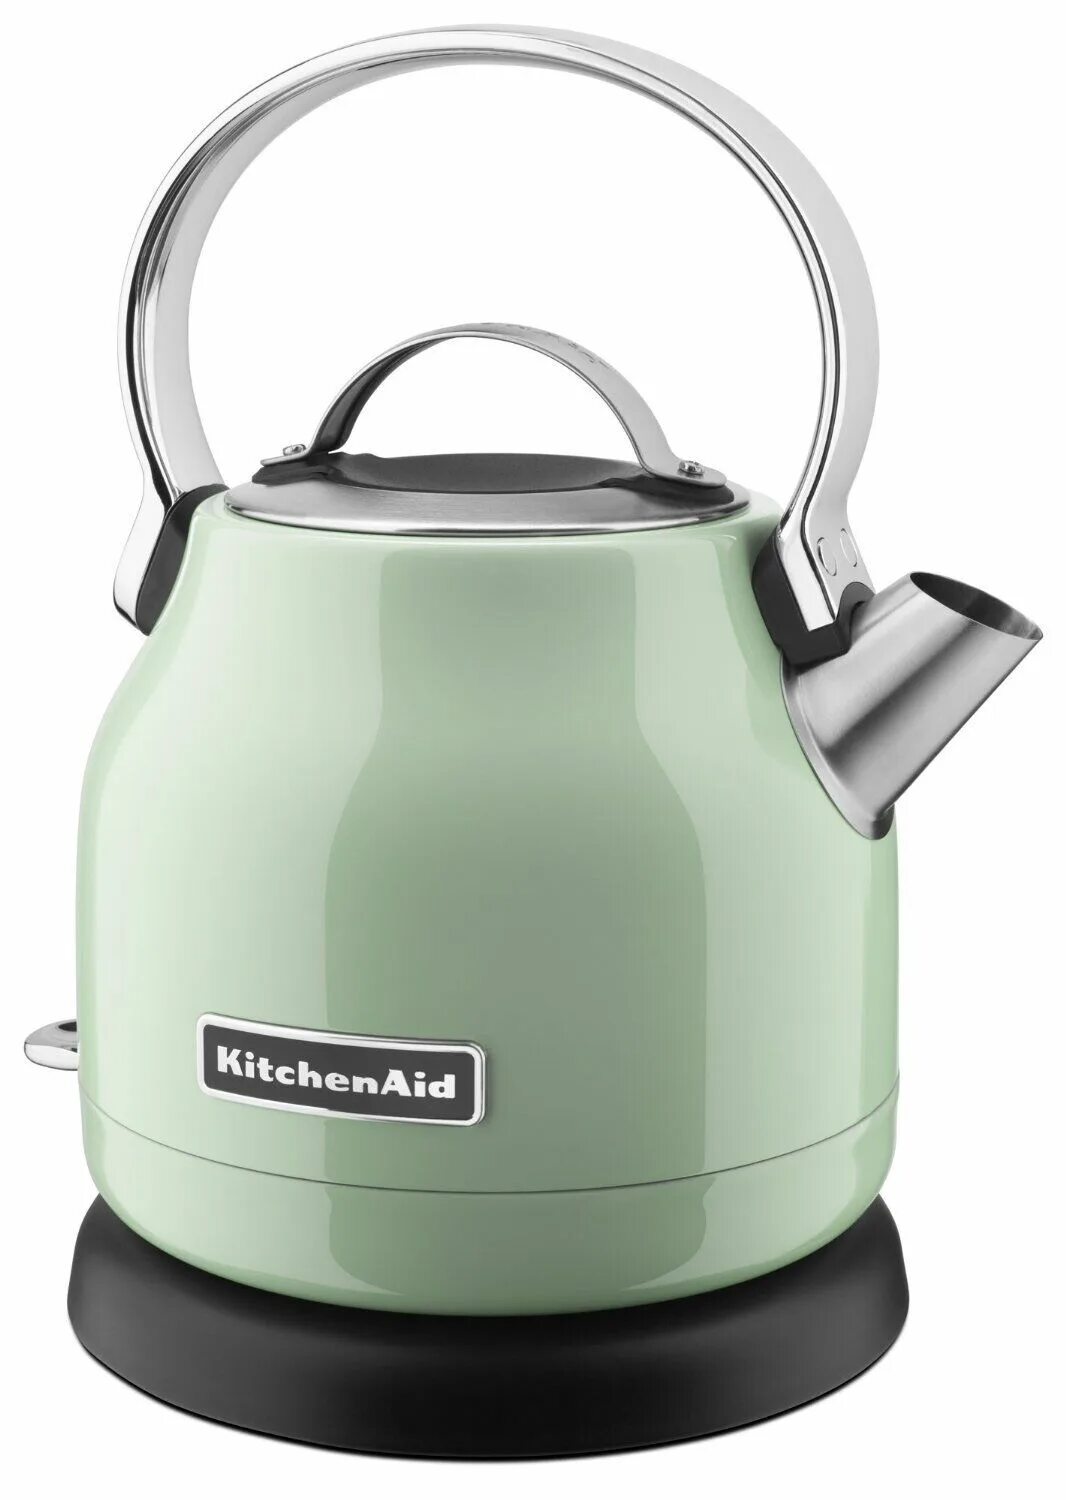 Купить чайник для воды. Чайник Electric kettle 1033d. Kitchenaid чайник зеленый. Китчен эйд чайник электрический. Электрический чайник КИТЧЕНАИД.